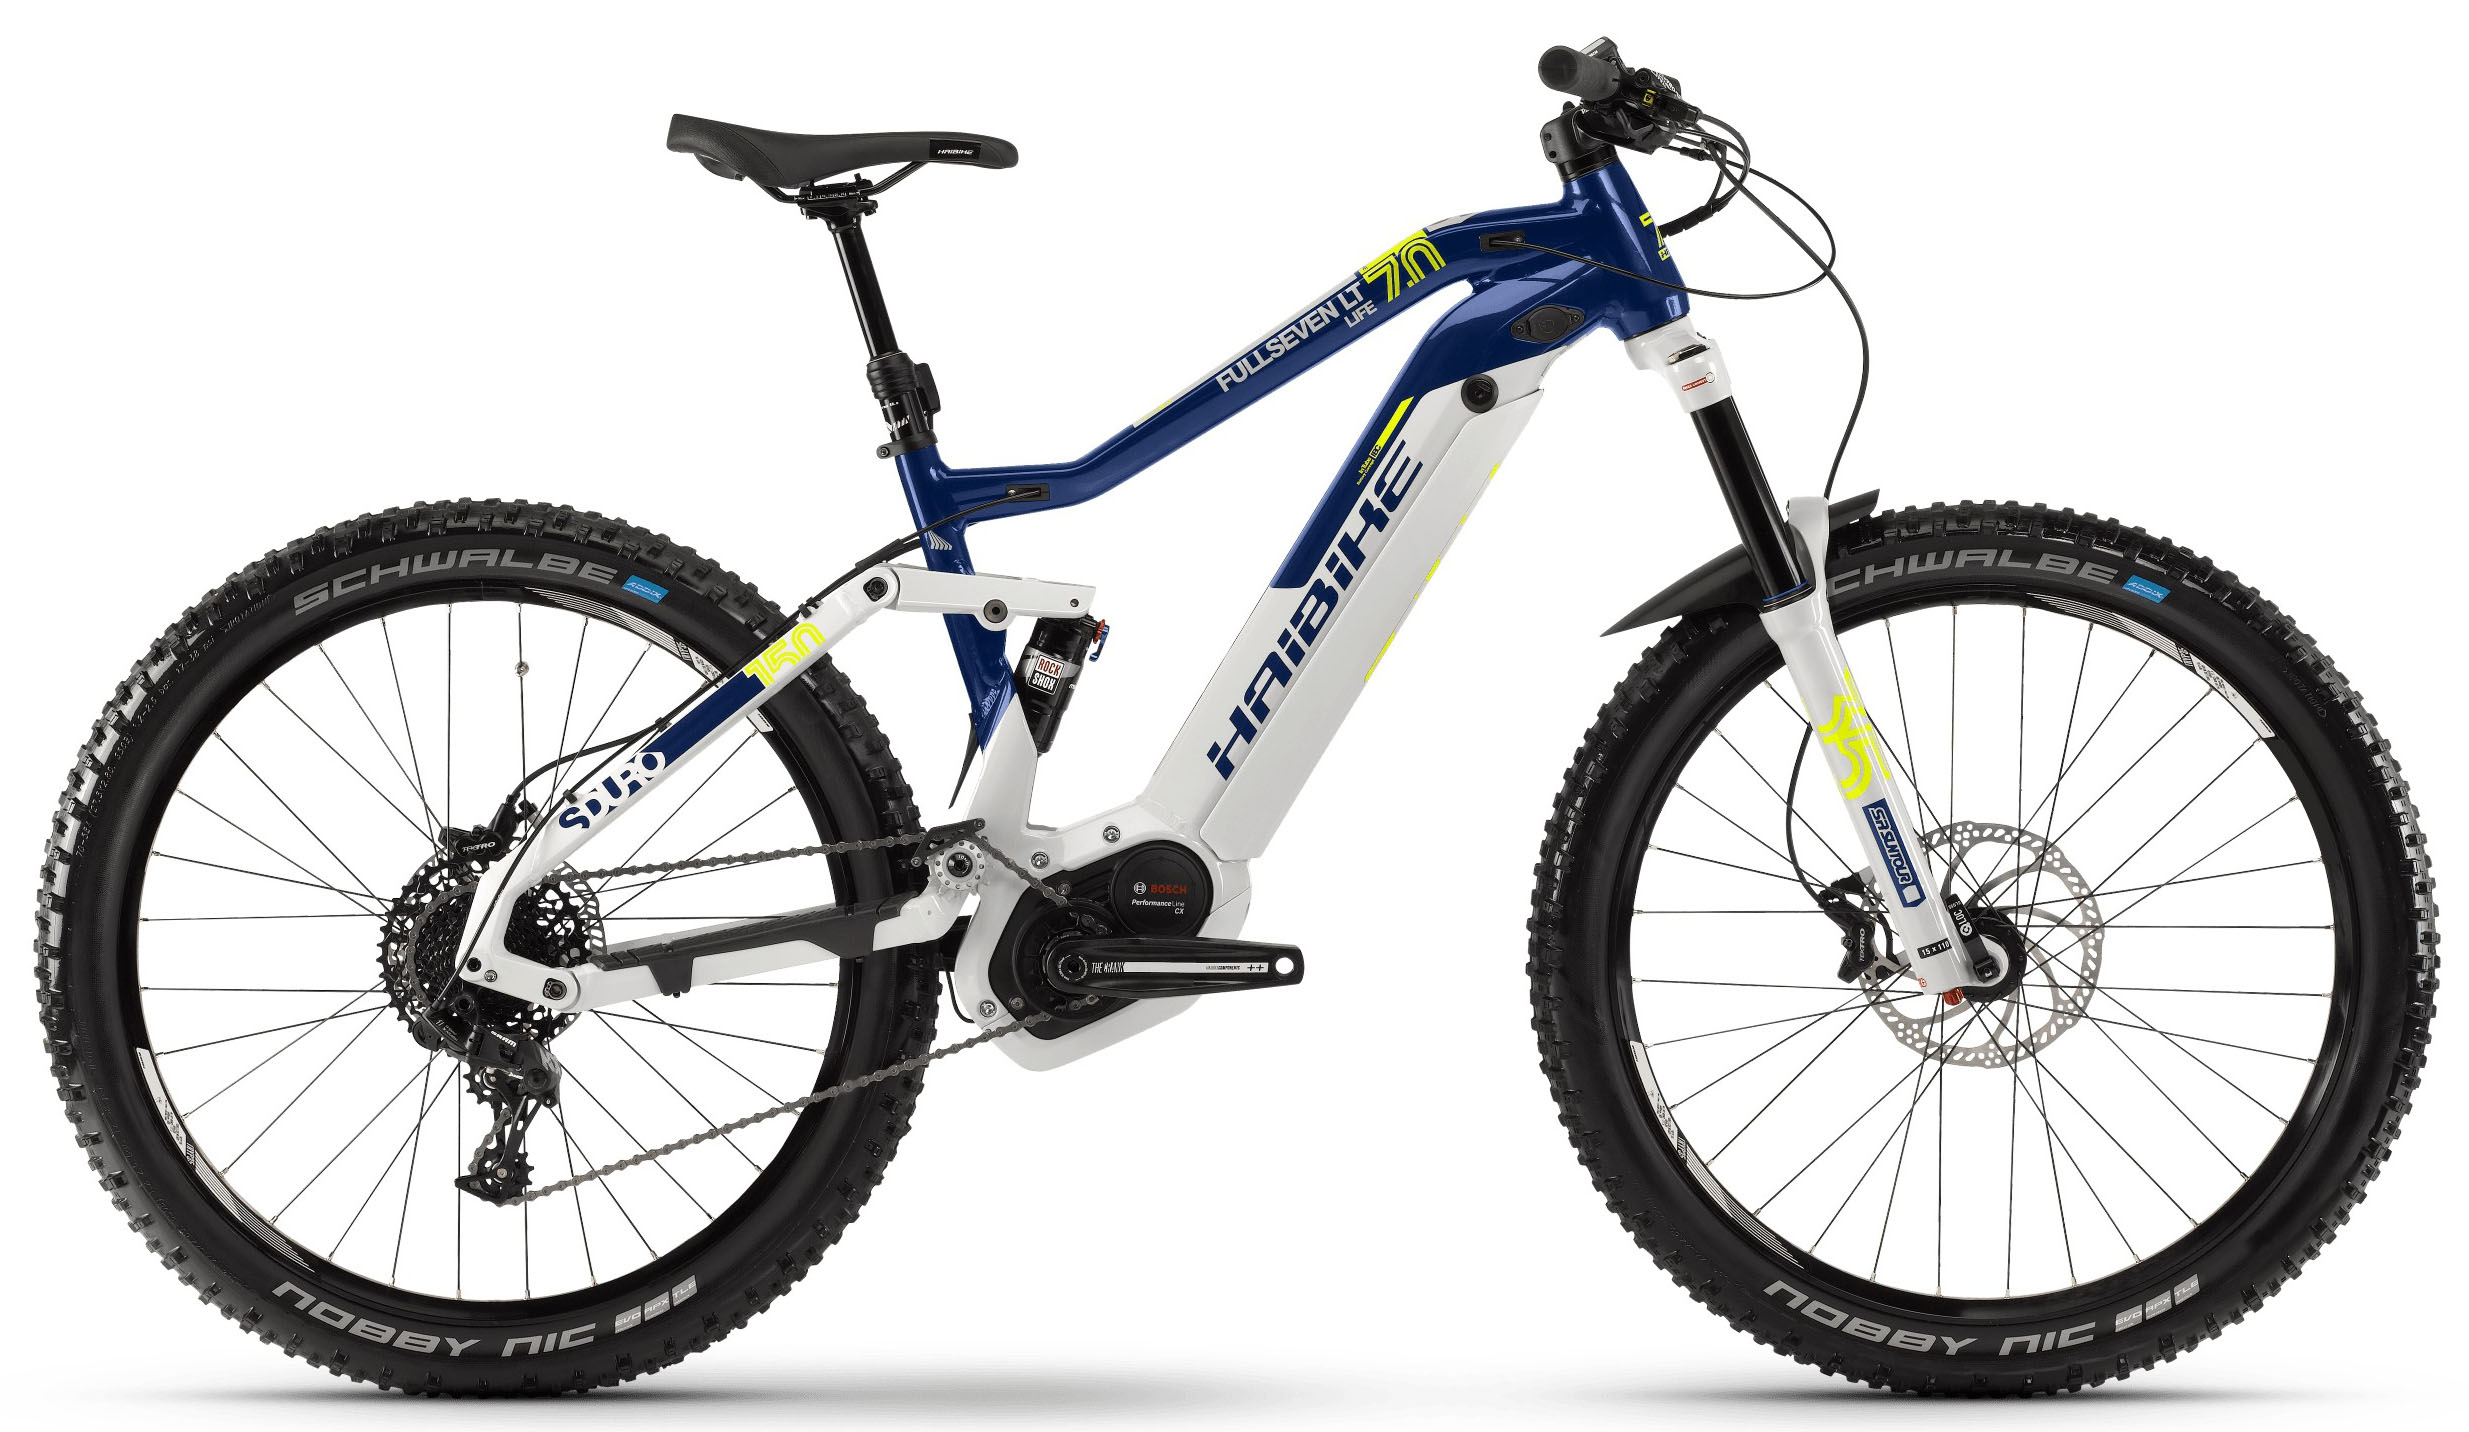  Велосипед Haibike SDURO Fullseven Life LT 7.0 i500Wh 11-G NX 2019